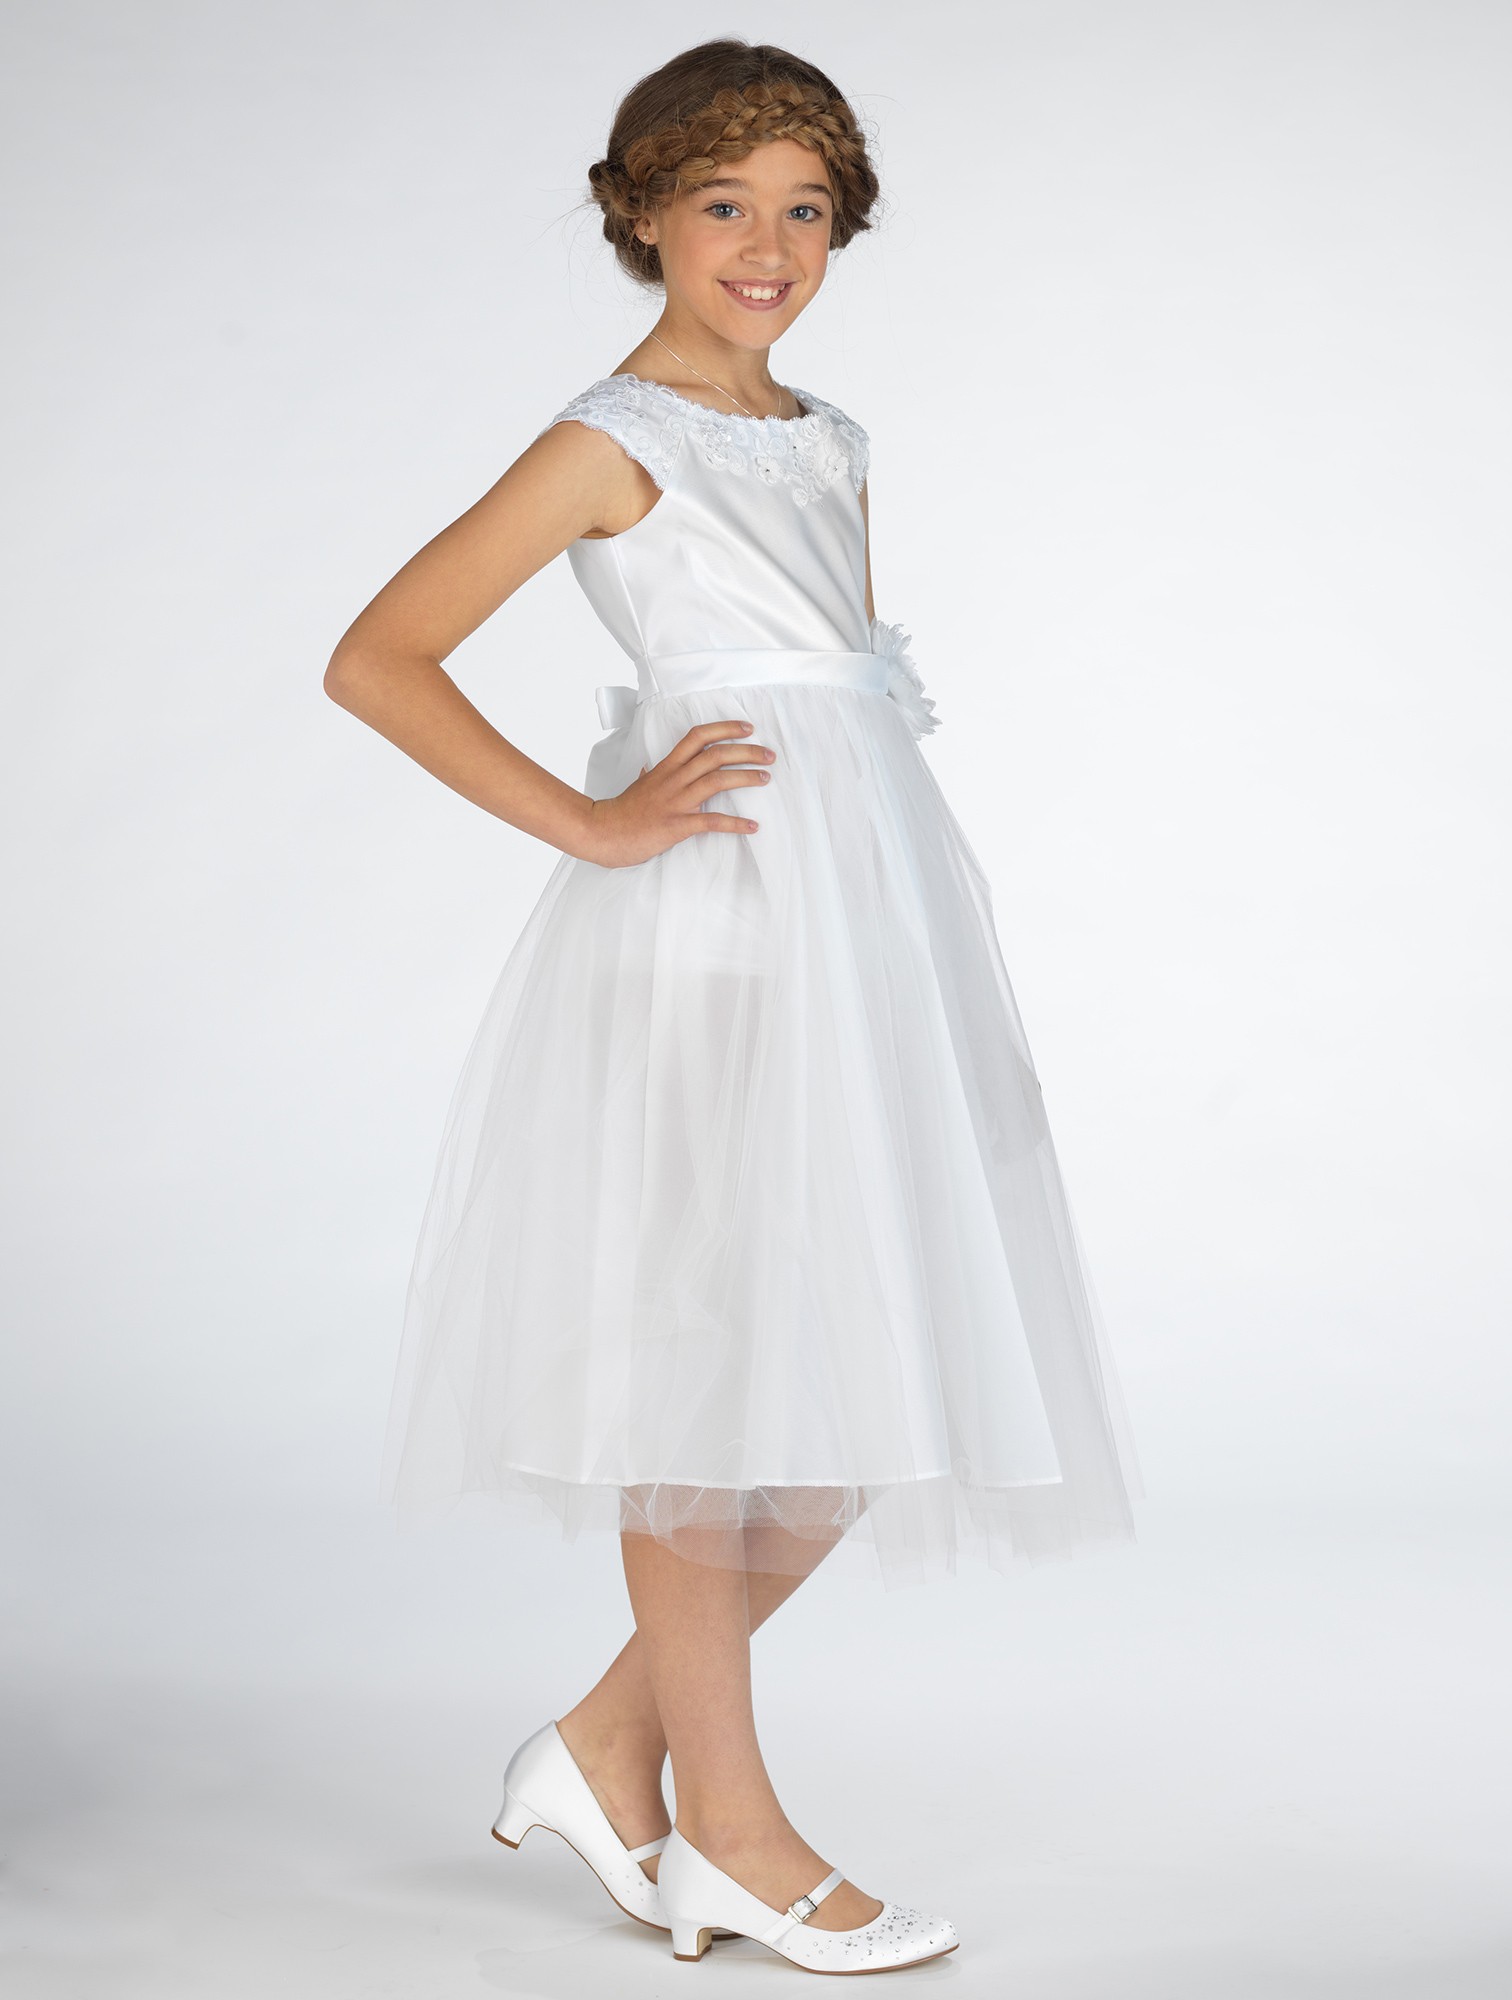 Dívčí společenské bílé šaty Paola 10-11 let + čelenka zdarma